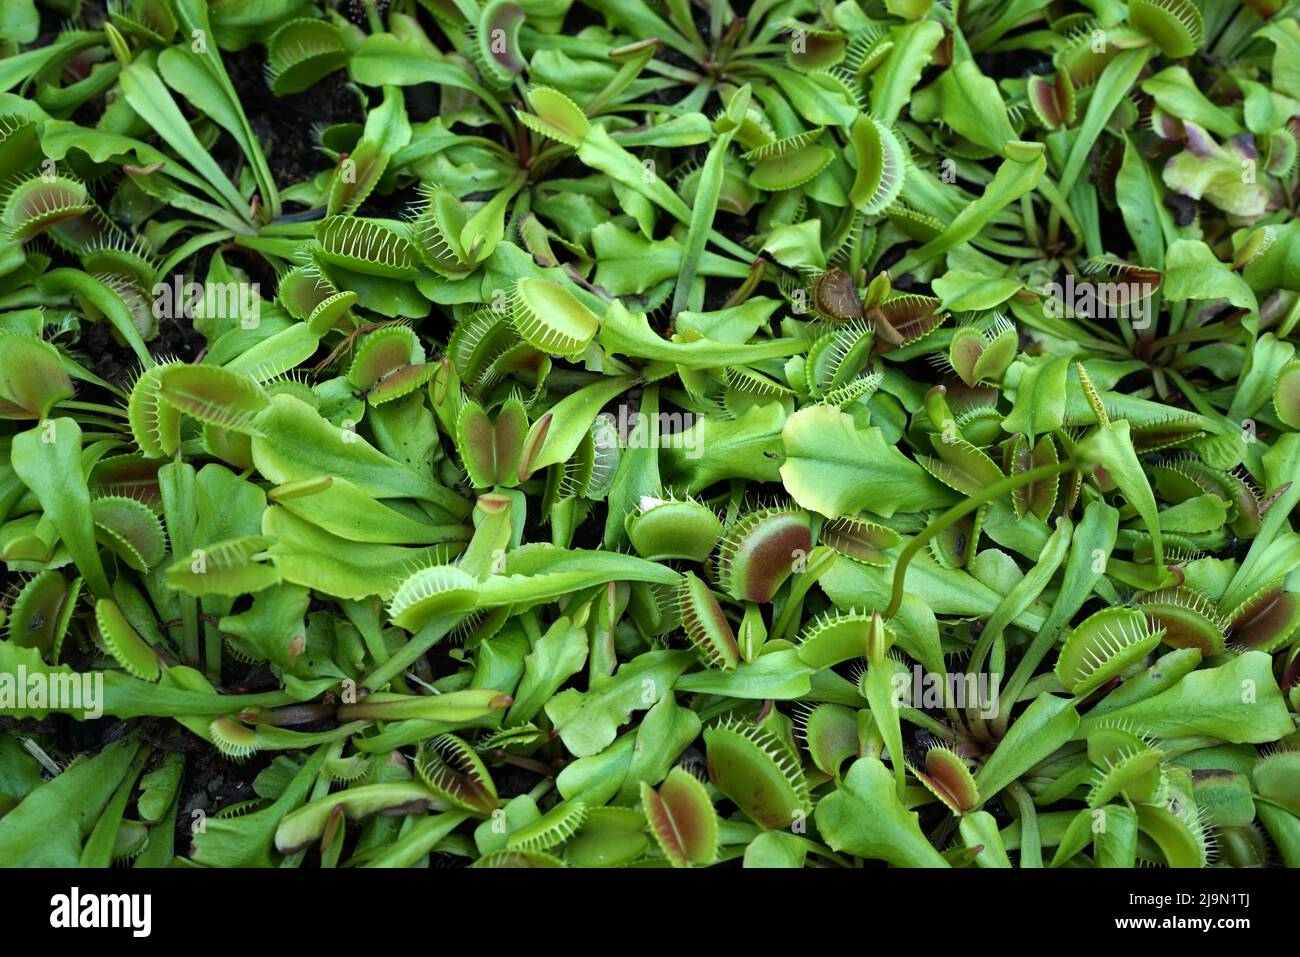 Le piège à mouches de Vénus ou Dionaea musicipula est une plante carnivore indigène des zones humides subtropicales sur la côte est des États-Unis. Il attrape sa proie avec un t Banque D'Images